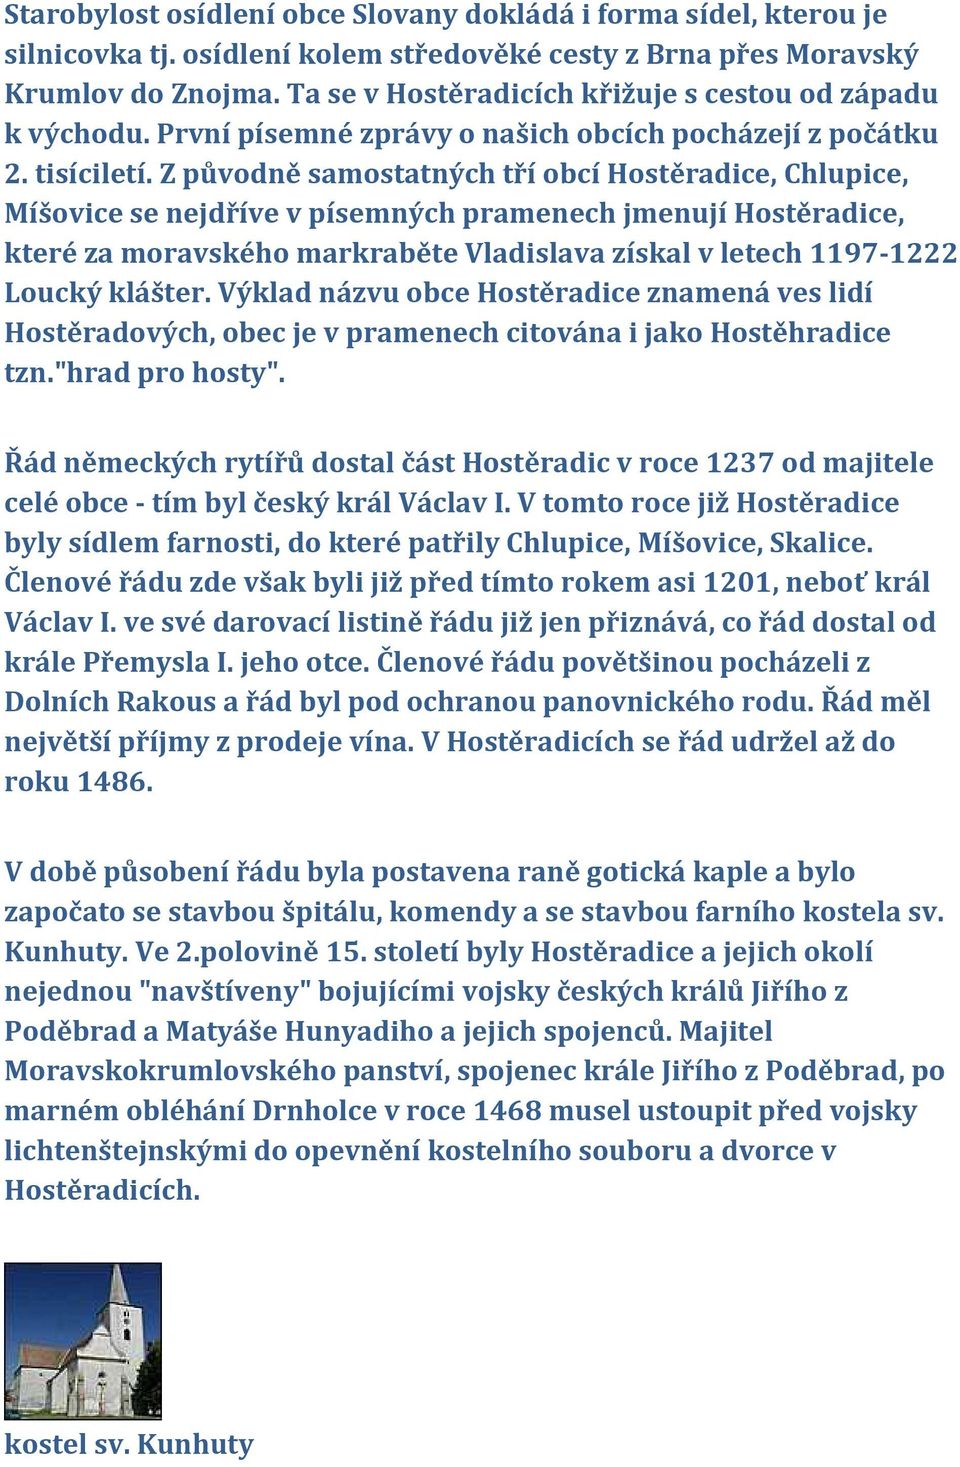 Z původně samostatných tří obcí Hostěradice, Chlupice, Míšovice se nejdříve v písemných pramenech jmenují Hostěradice, které za moravského markraběte Vladislava získal v letech 1197-1222 Loucký